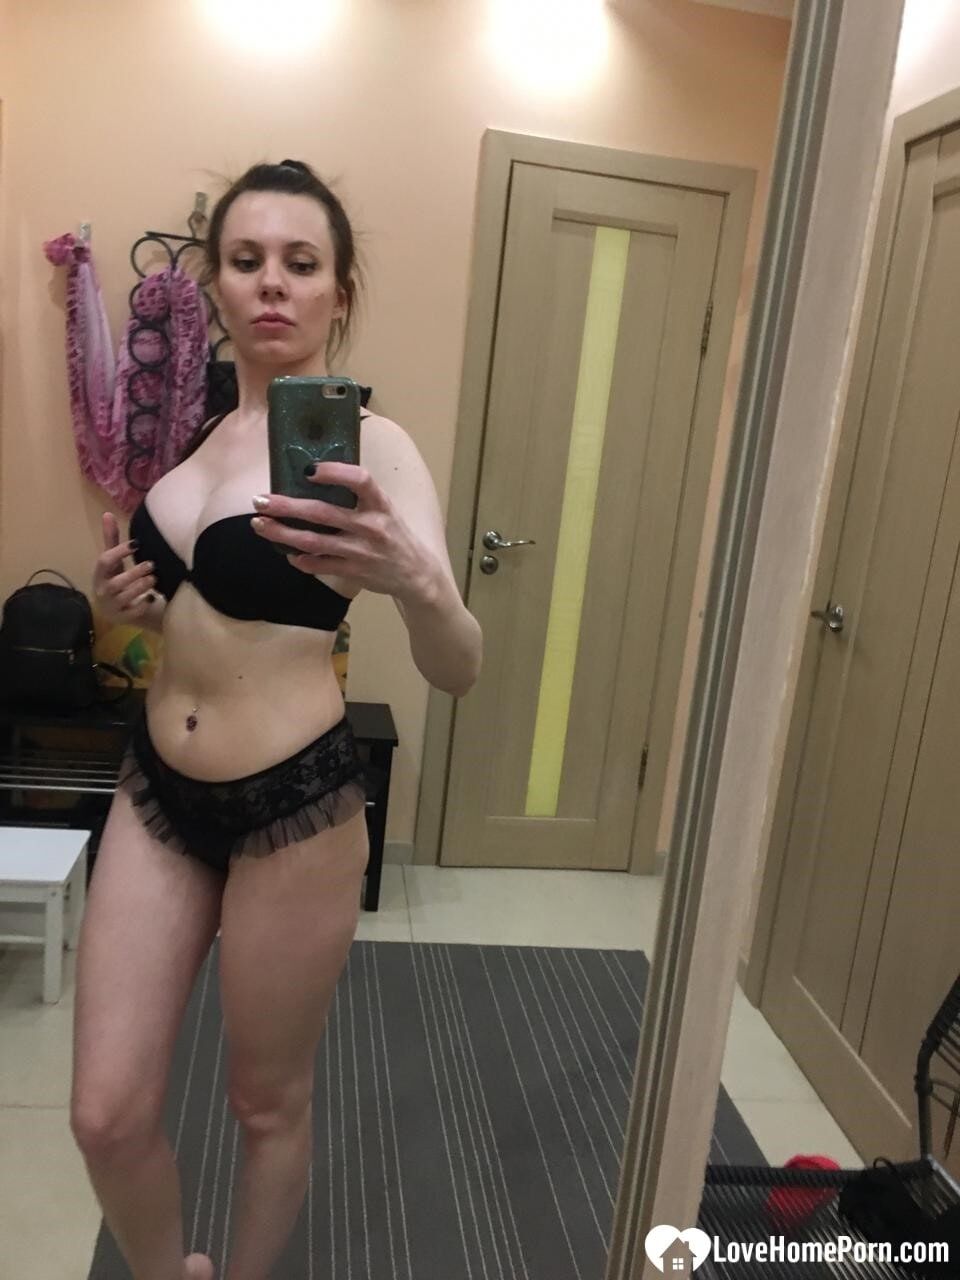 Sexy mirror selfies in my favorite lingerie #21